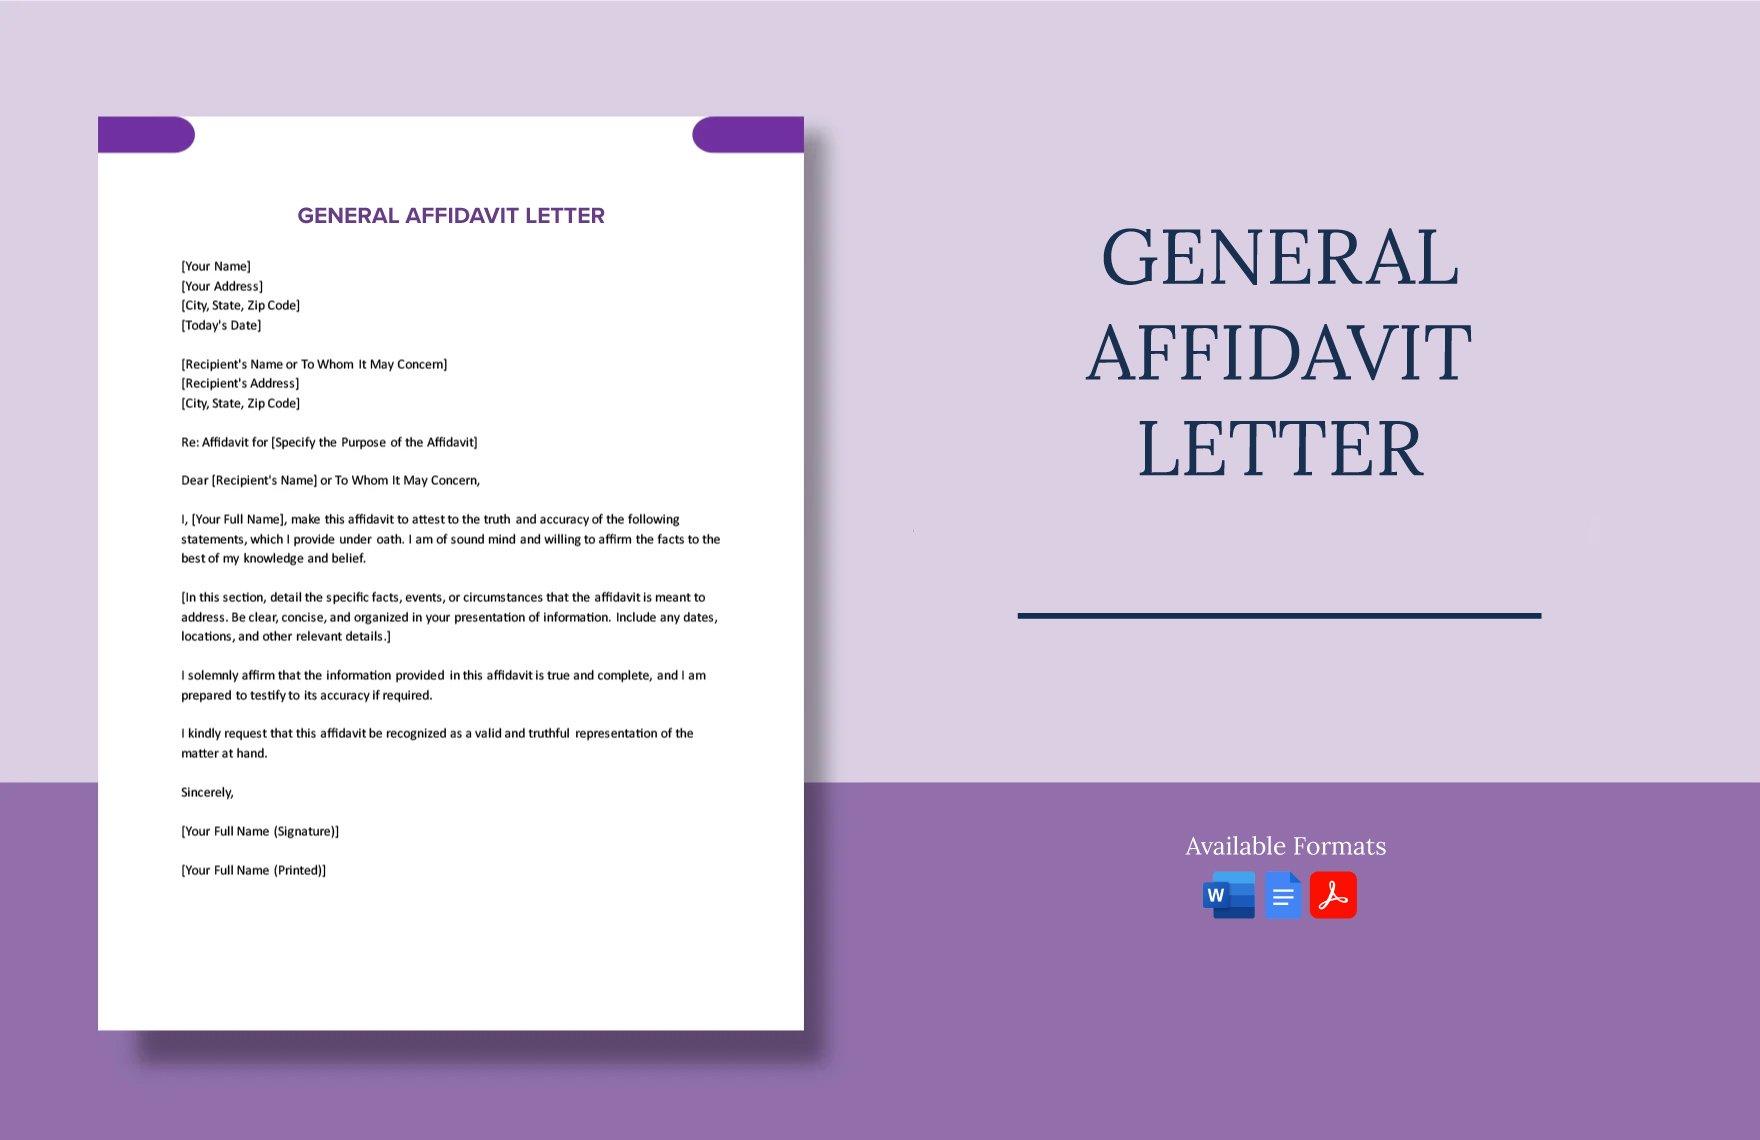 General Affidavit Letter in Word, Google Docs, PDF